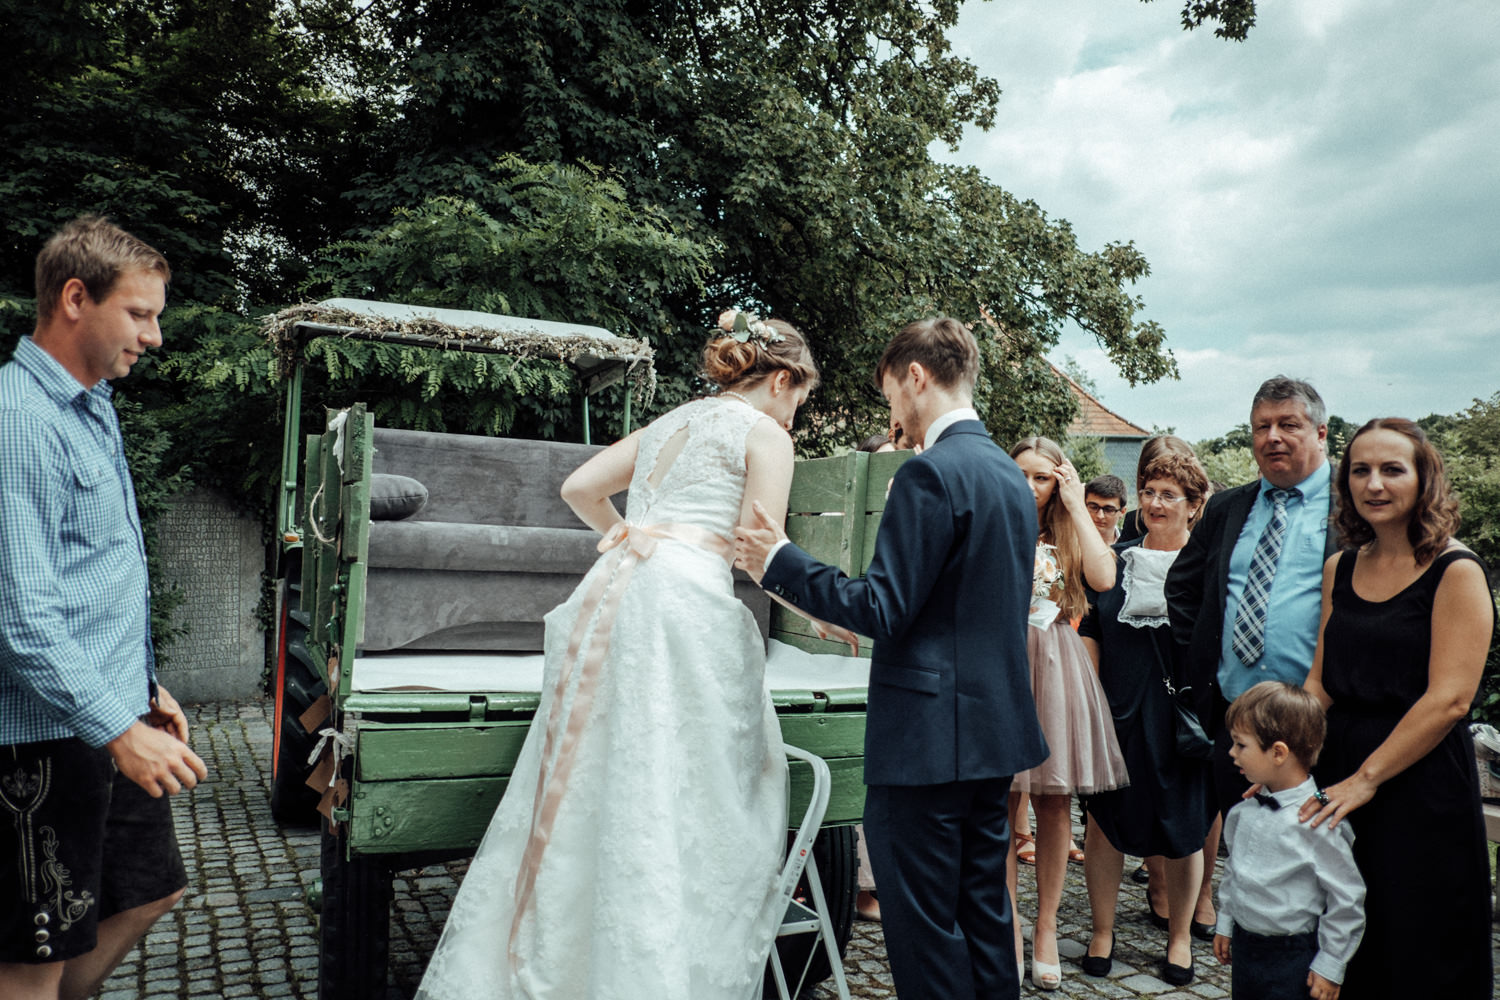 Zelthochzeit-Inspiration-Hochzeitsreportage-natürlich-Hessenhof-Coburg-Oberfranken-Aachen-Hochzeitsfotograf-Kevin Biberbach-KEVIN Fotografie-Junebug-Hochzeitswahn-067.jpg